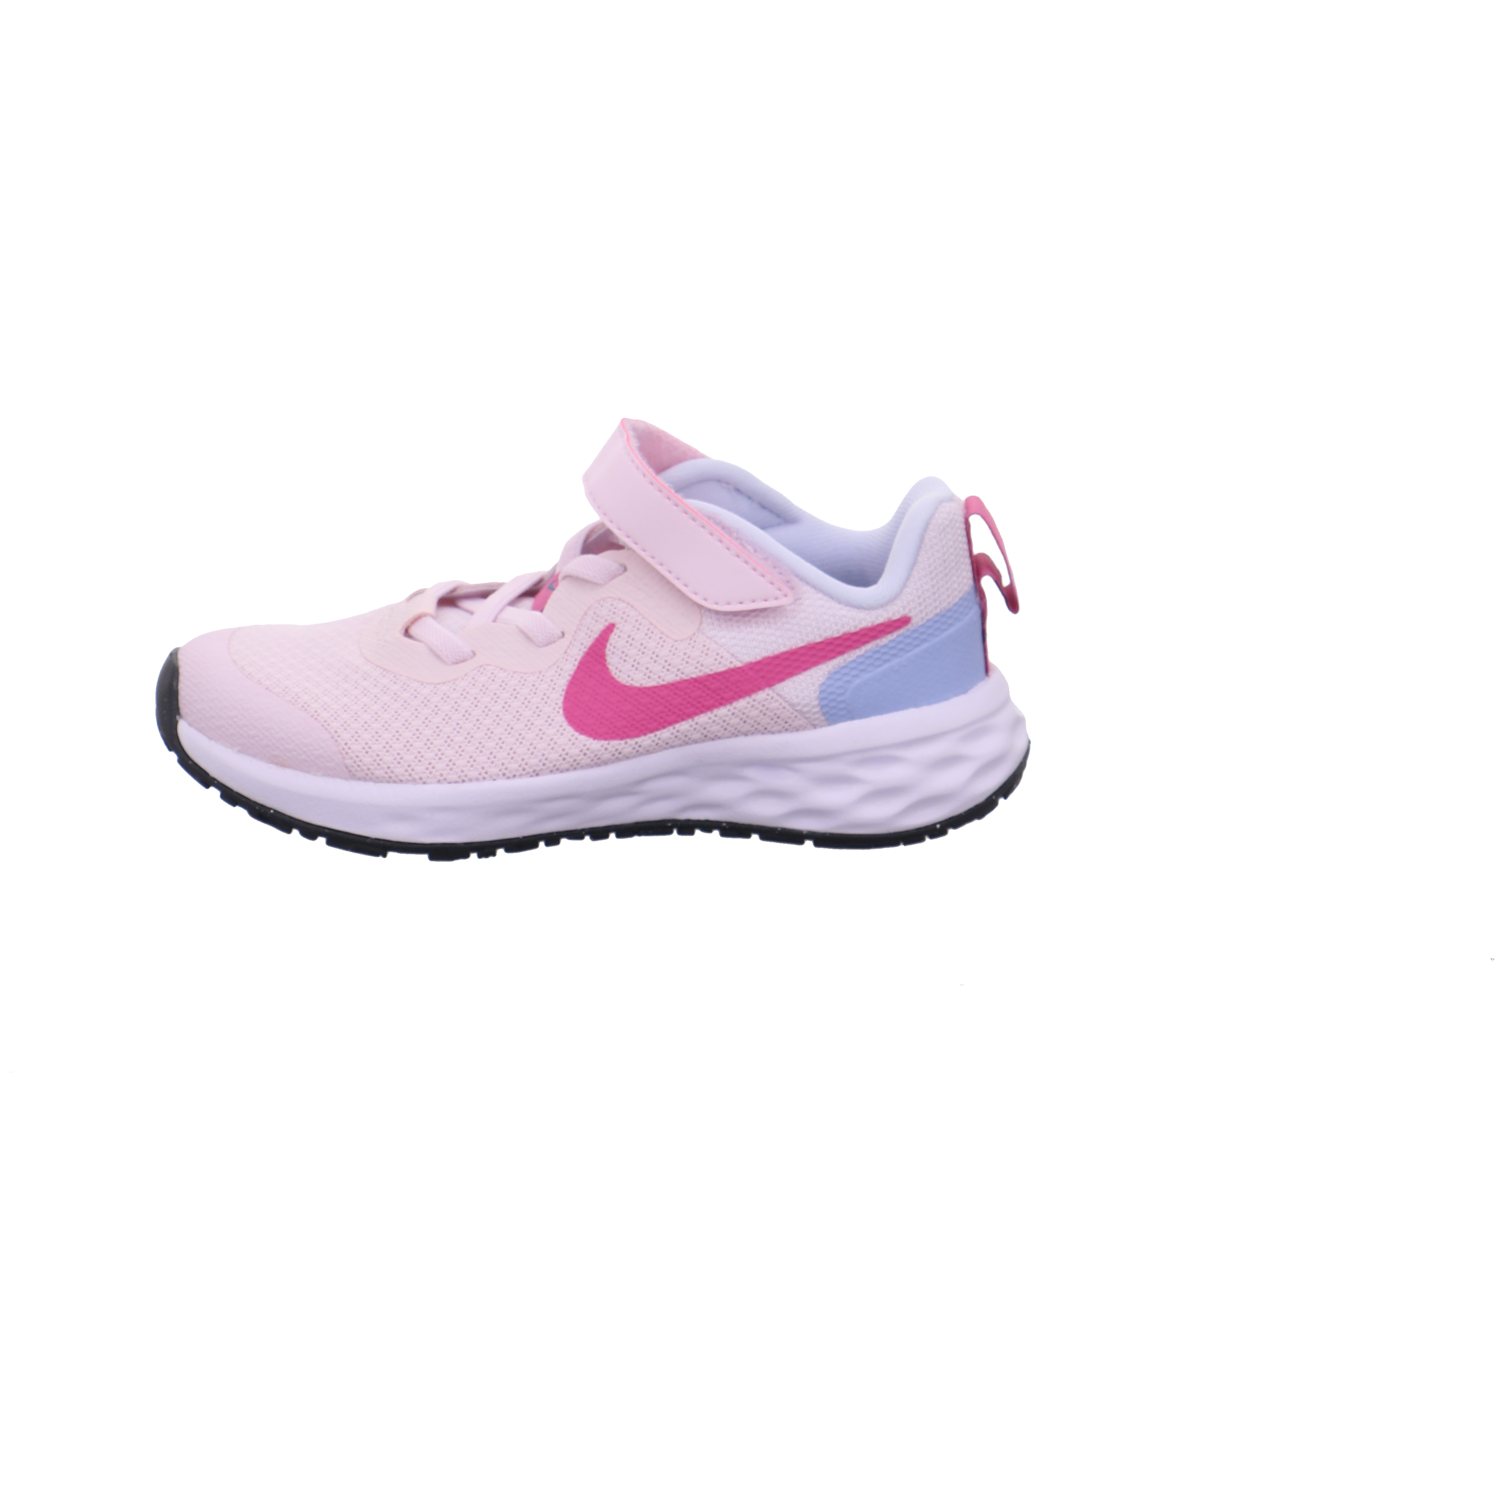 Nike Halbschuhe rose kombi Bild1